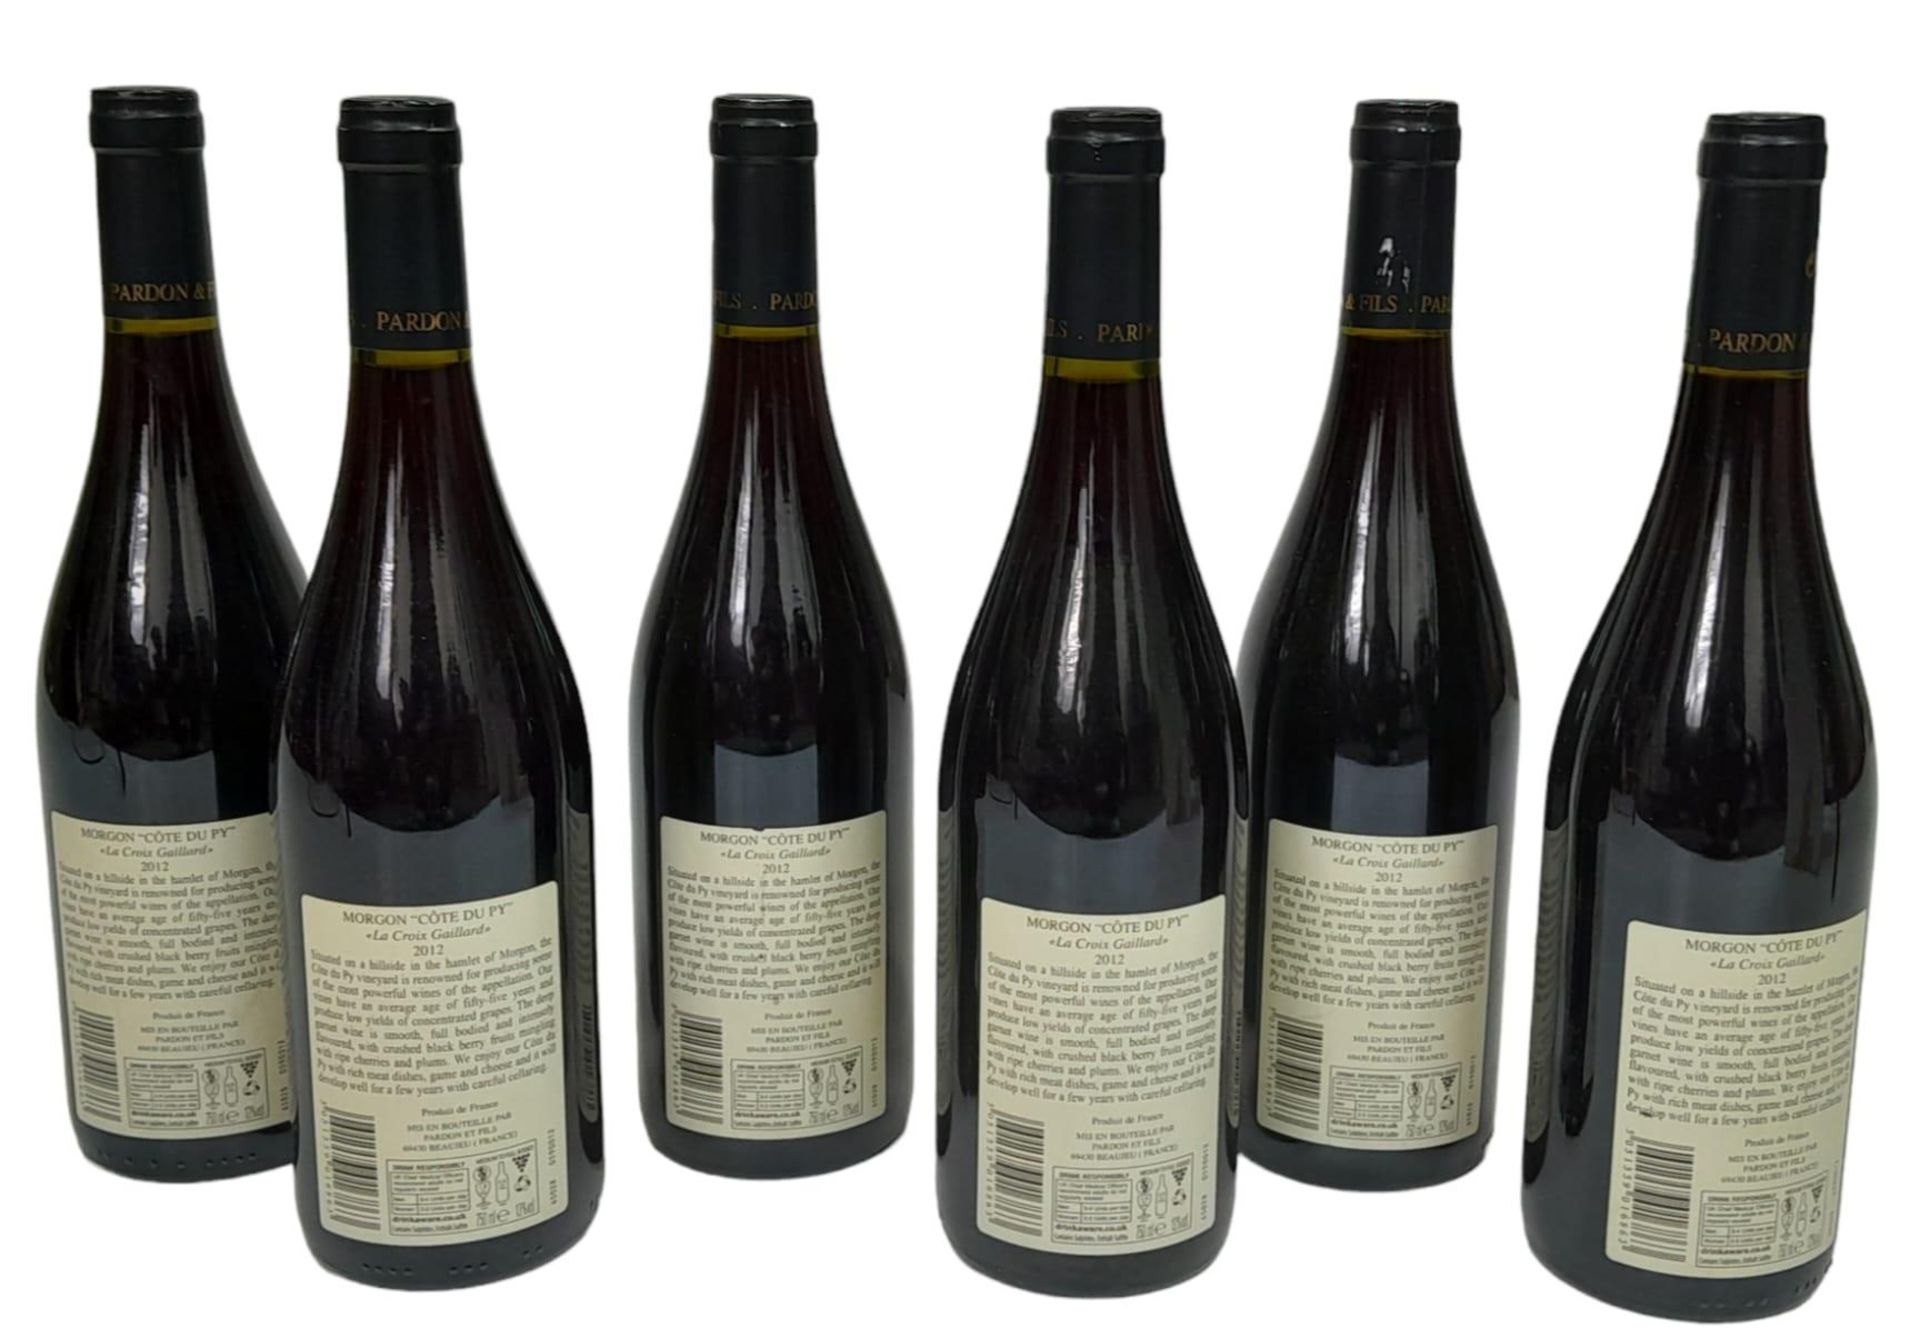 6 Bottles of Morgon Cote Du Py Domaine Pardon et Fils 2012 Cru Beaujolais. - Image 2 of 6